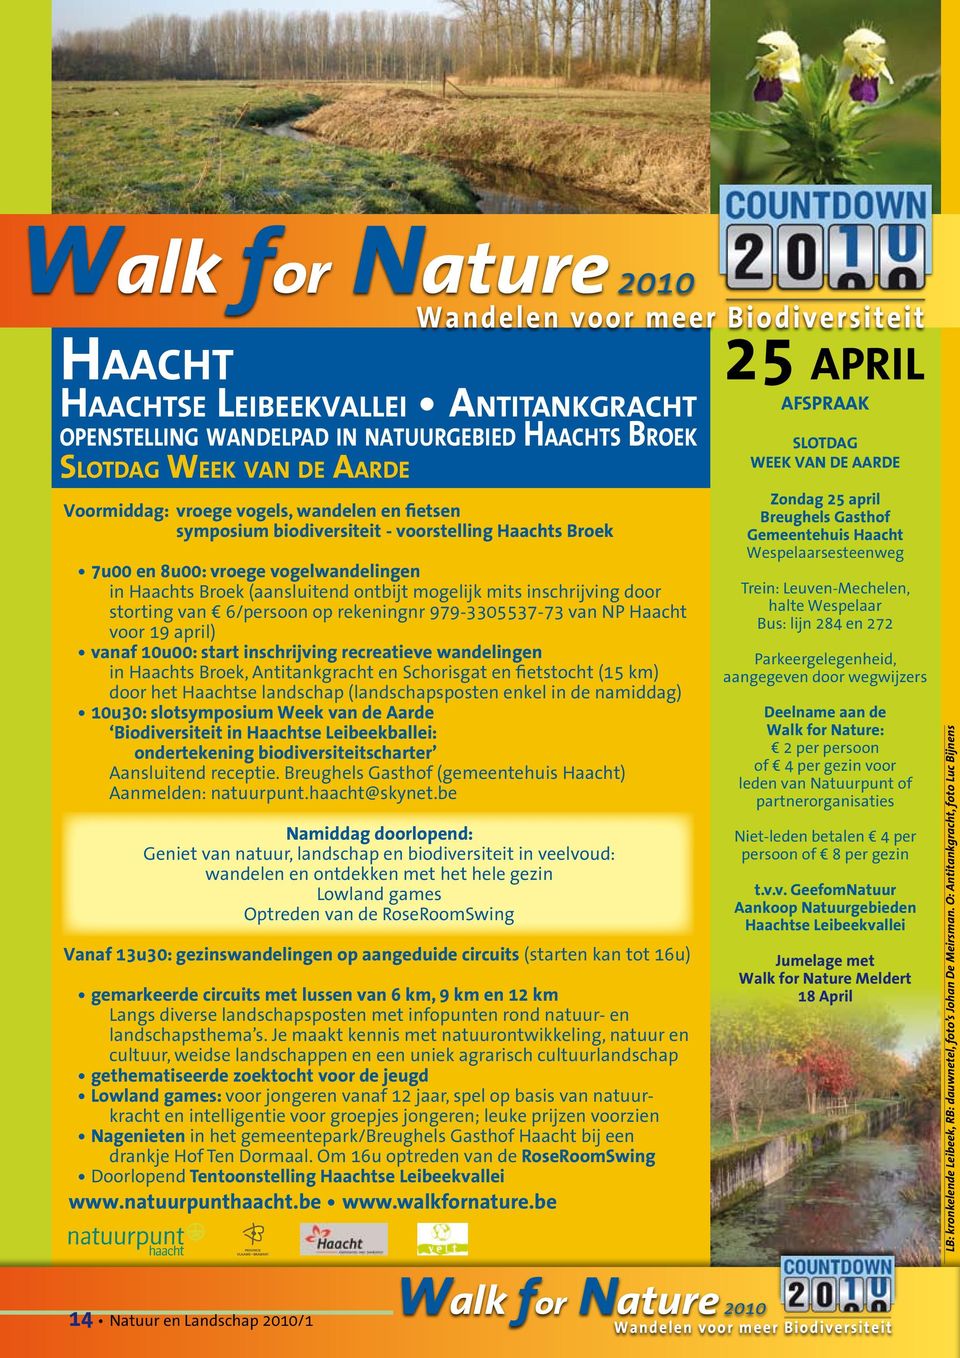 979-3305537-73 van NP Haacht voor 19 april) vanaf 10u00: start inschrijving recreatieve wandelingen in Haachts Broek, Antitankgracht en Schorisgat en fietstocht (15 km) door het Haachtse landschap